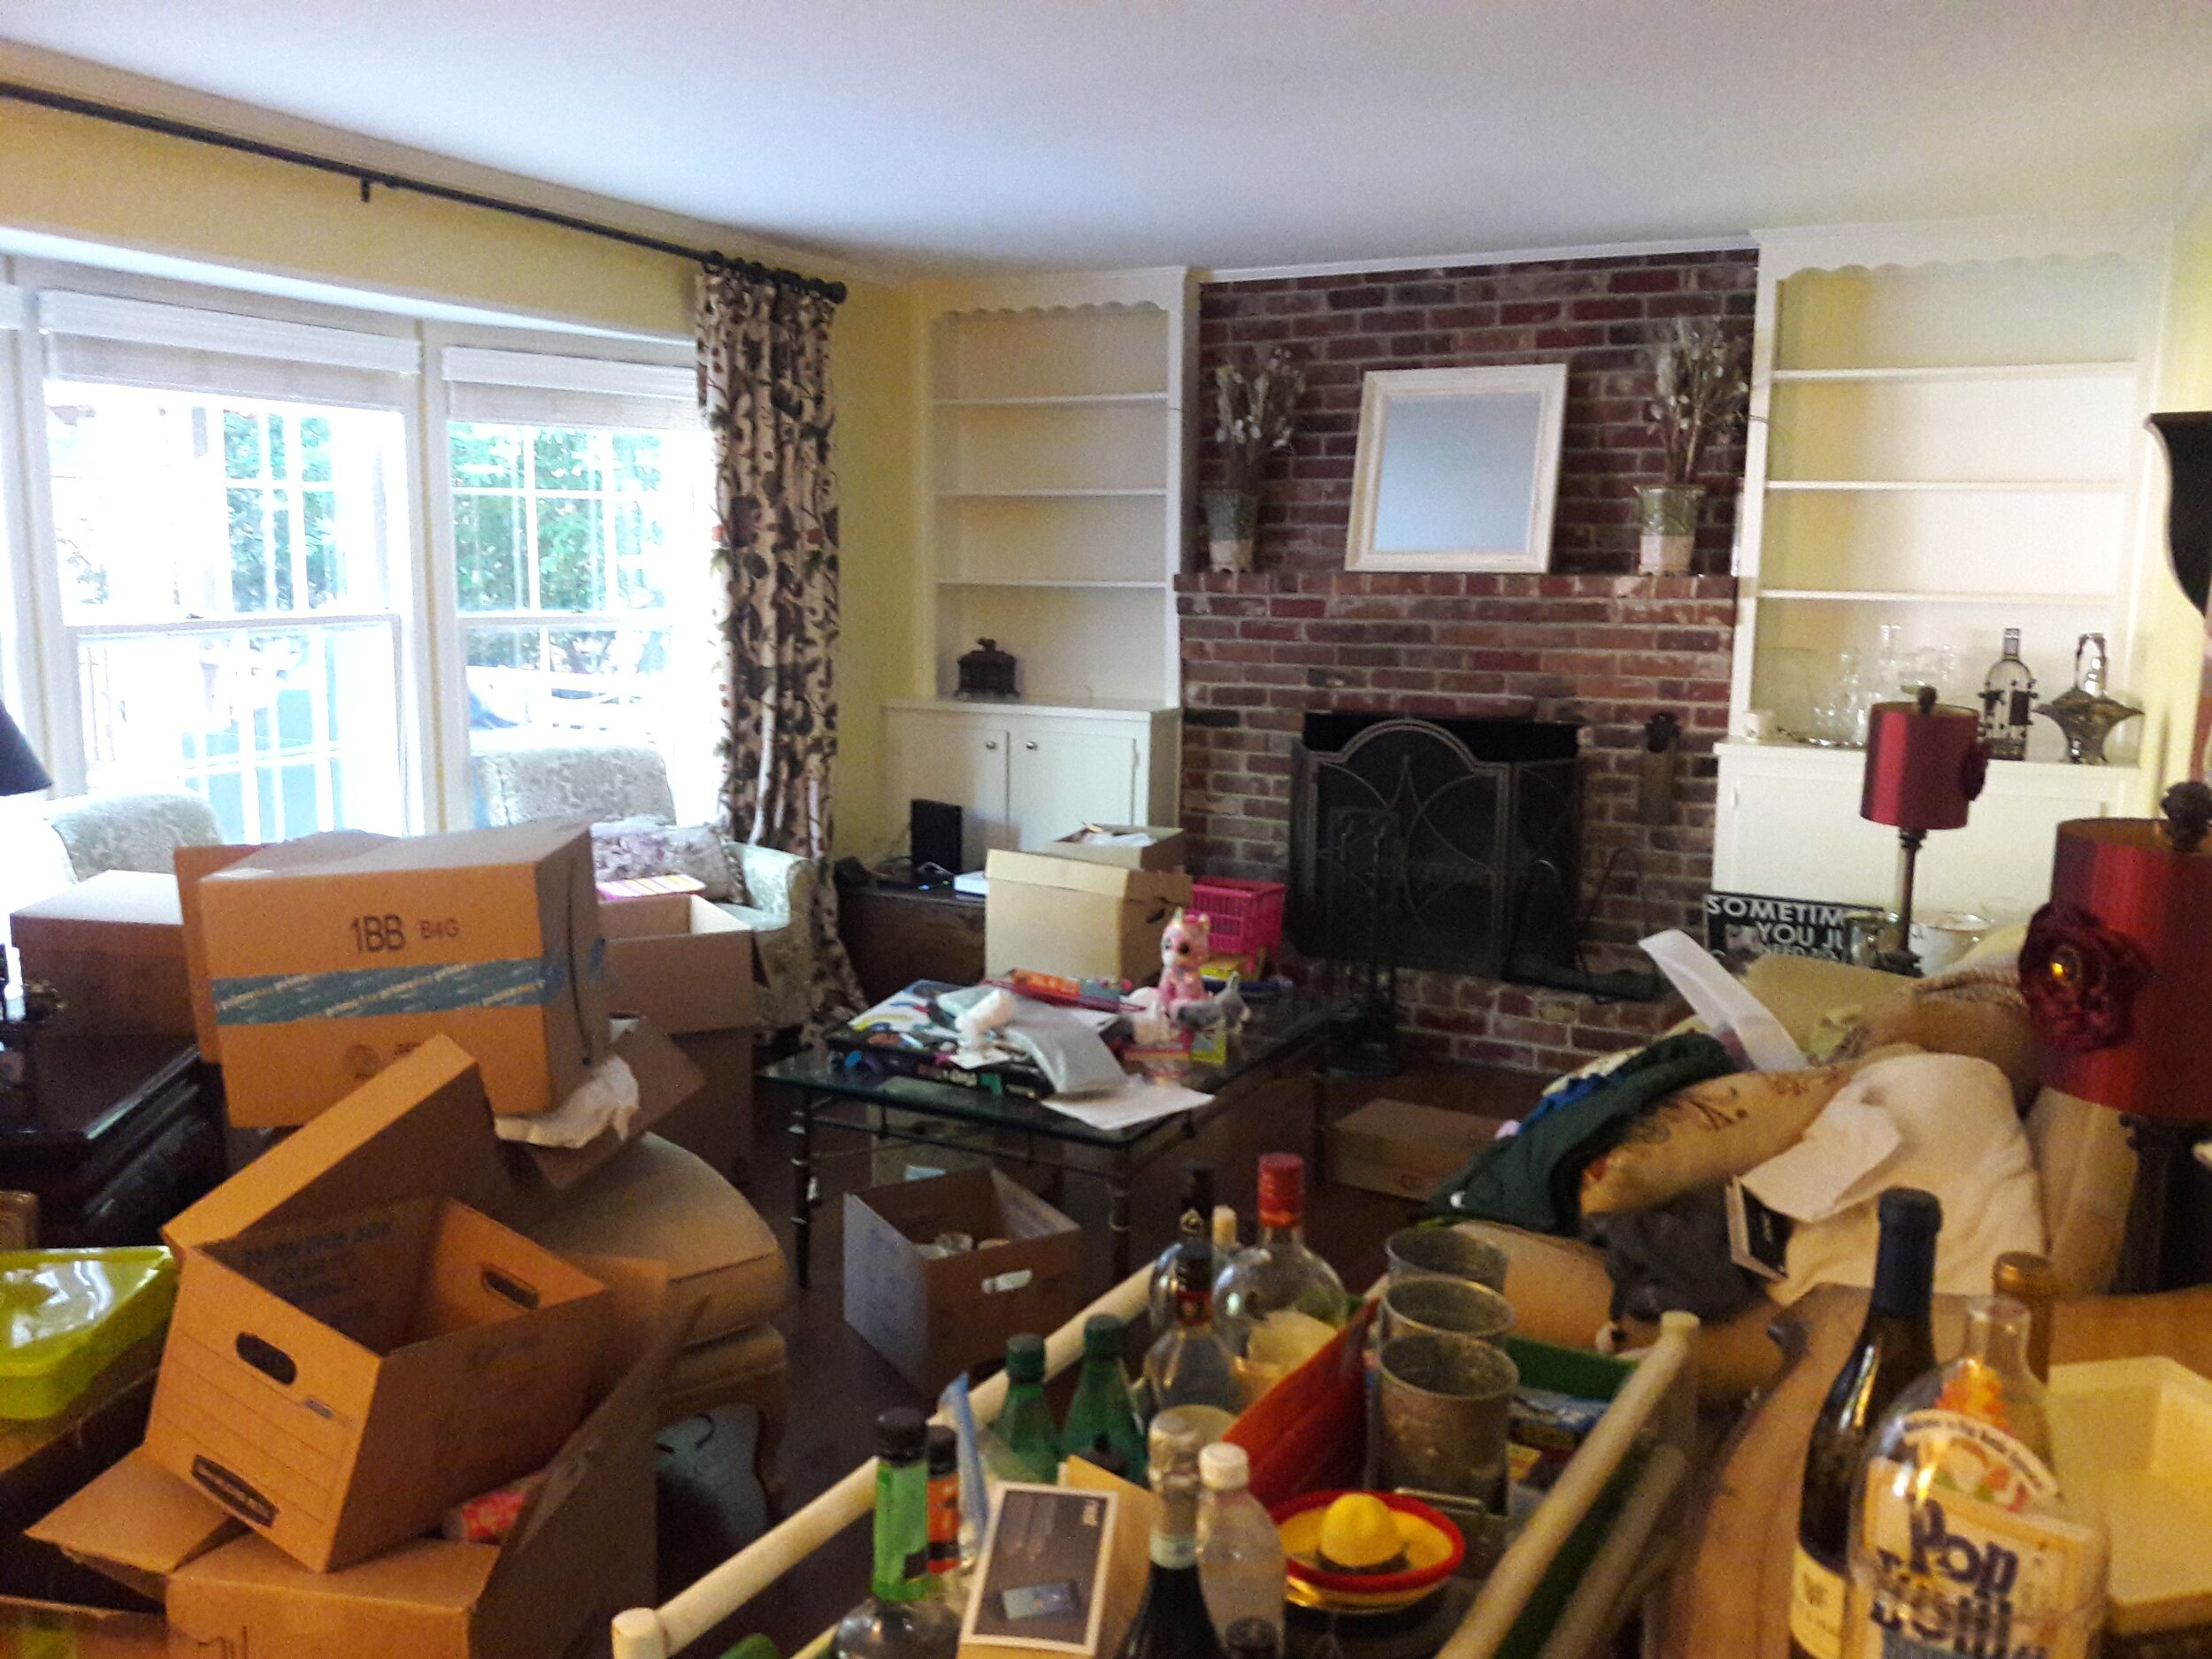 Glenrich Living Room Before.jpg